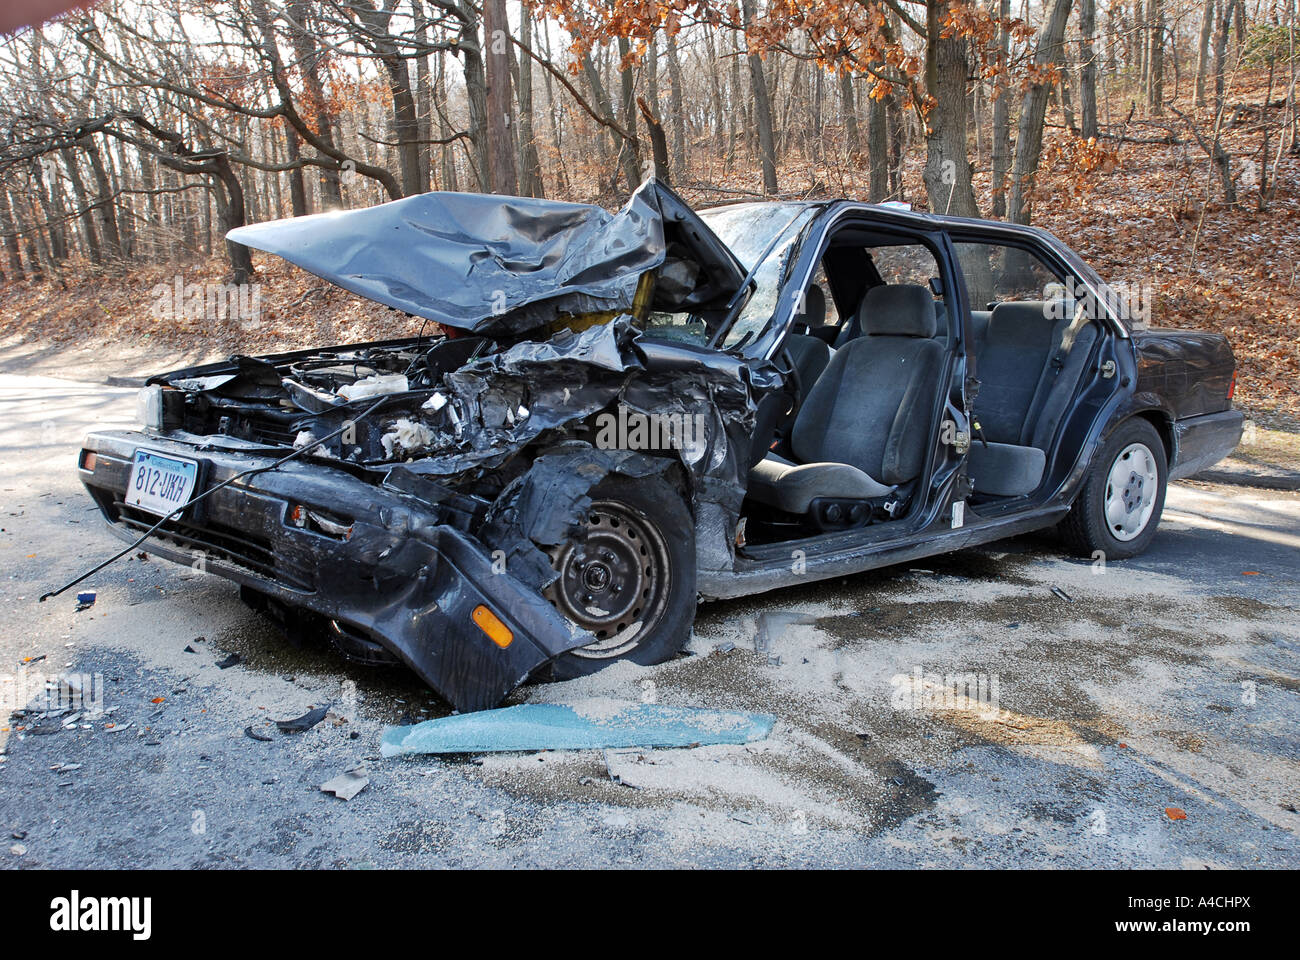 Voiture conduite par un conducteur ivre impliqué dans un grave accident à Hamden Connecticut USA Amérique du Nord Banque D'Images